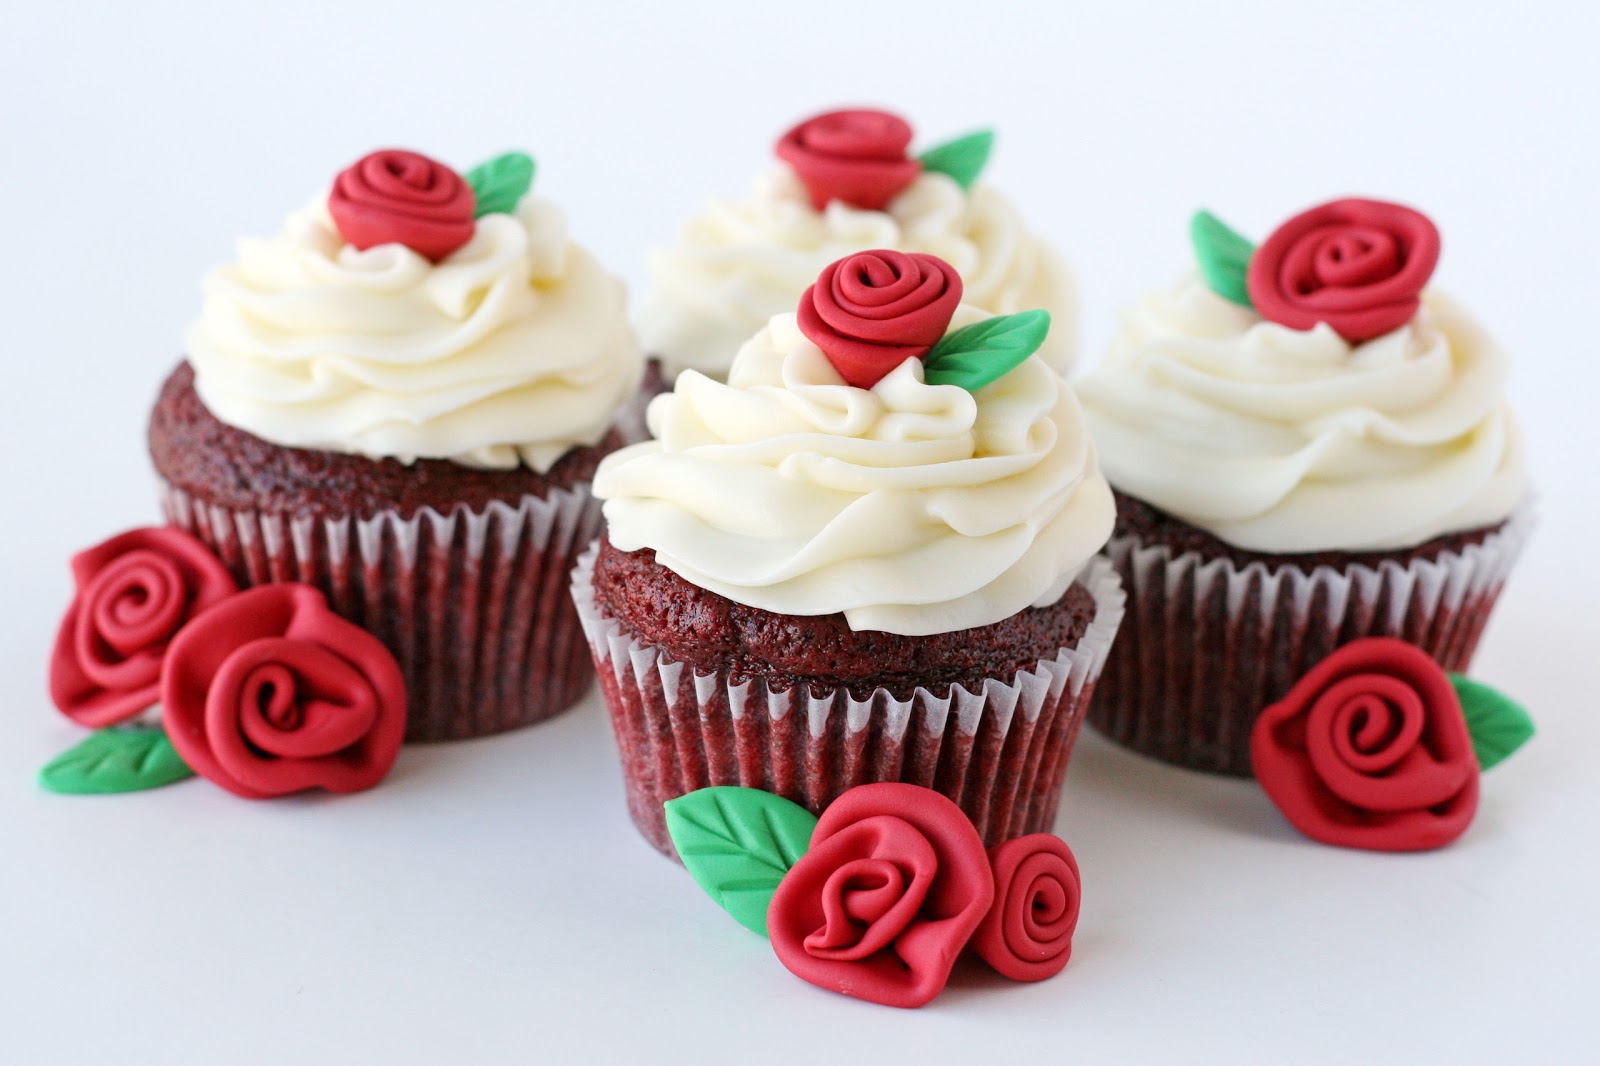 Red+velvet+cupcakes+with+roses.jpg